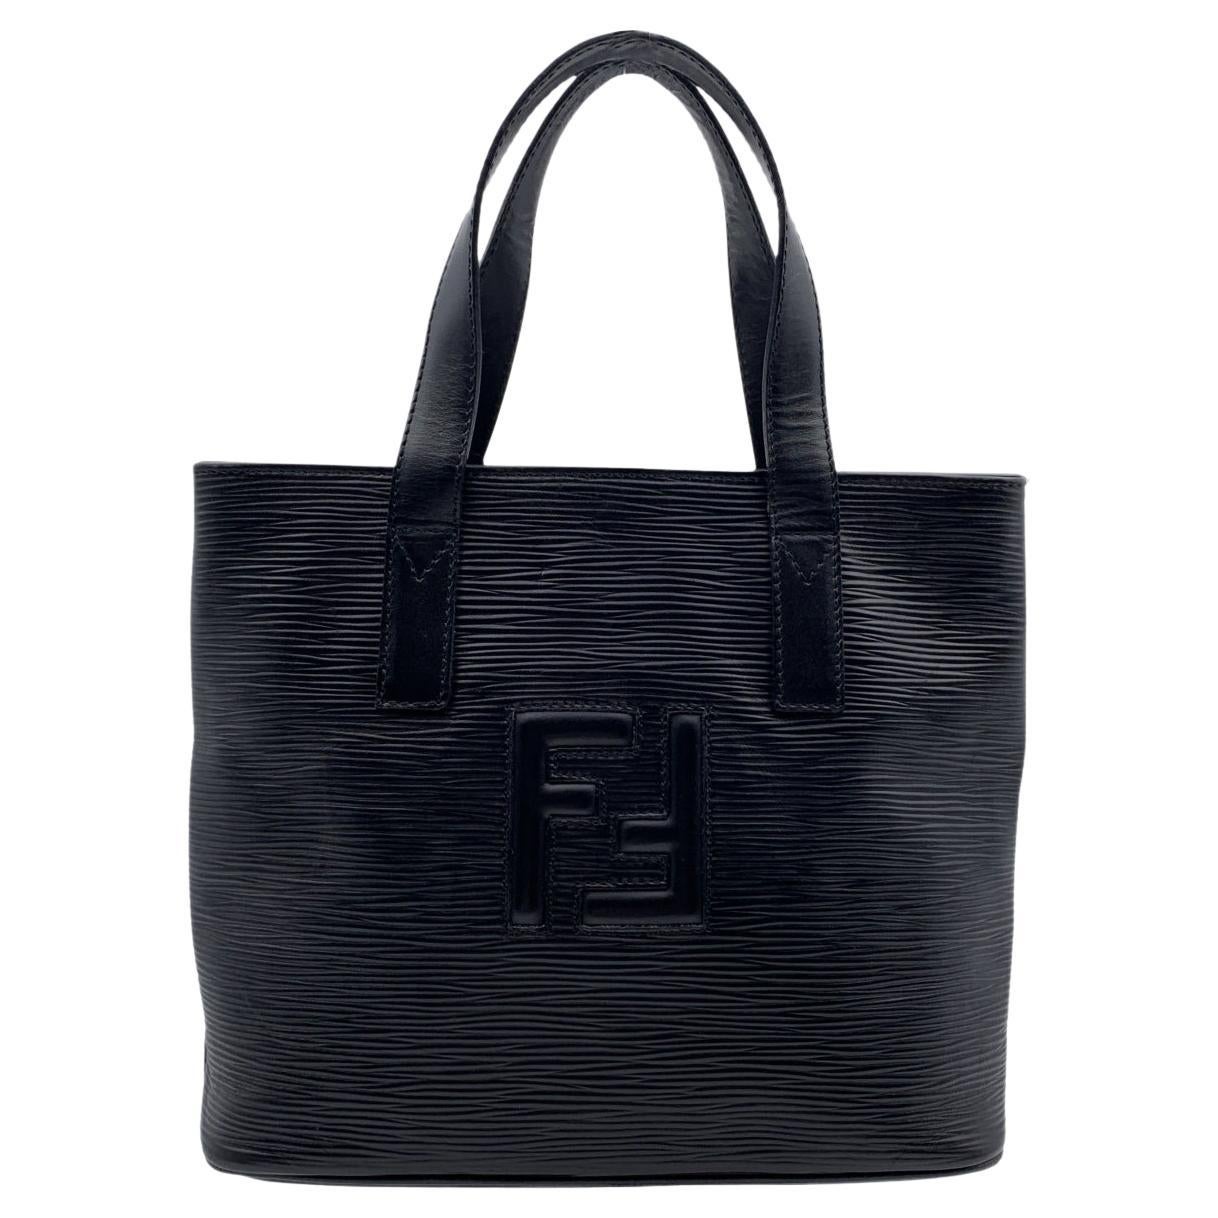 Fendi Vintage Black Textured Leather Small Tote Handbag